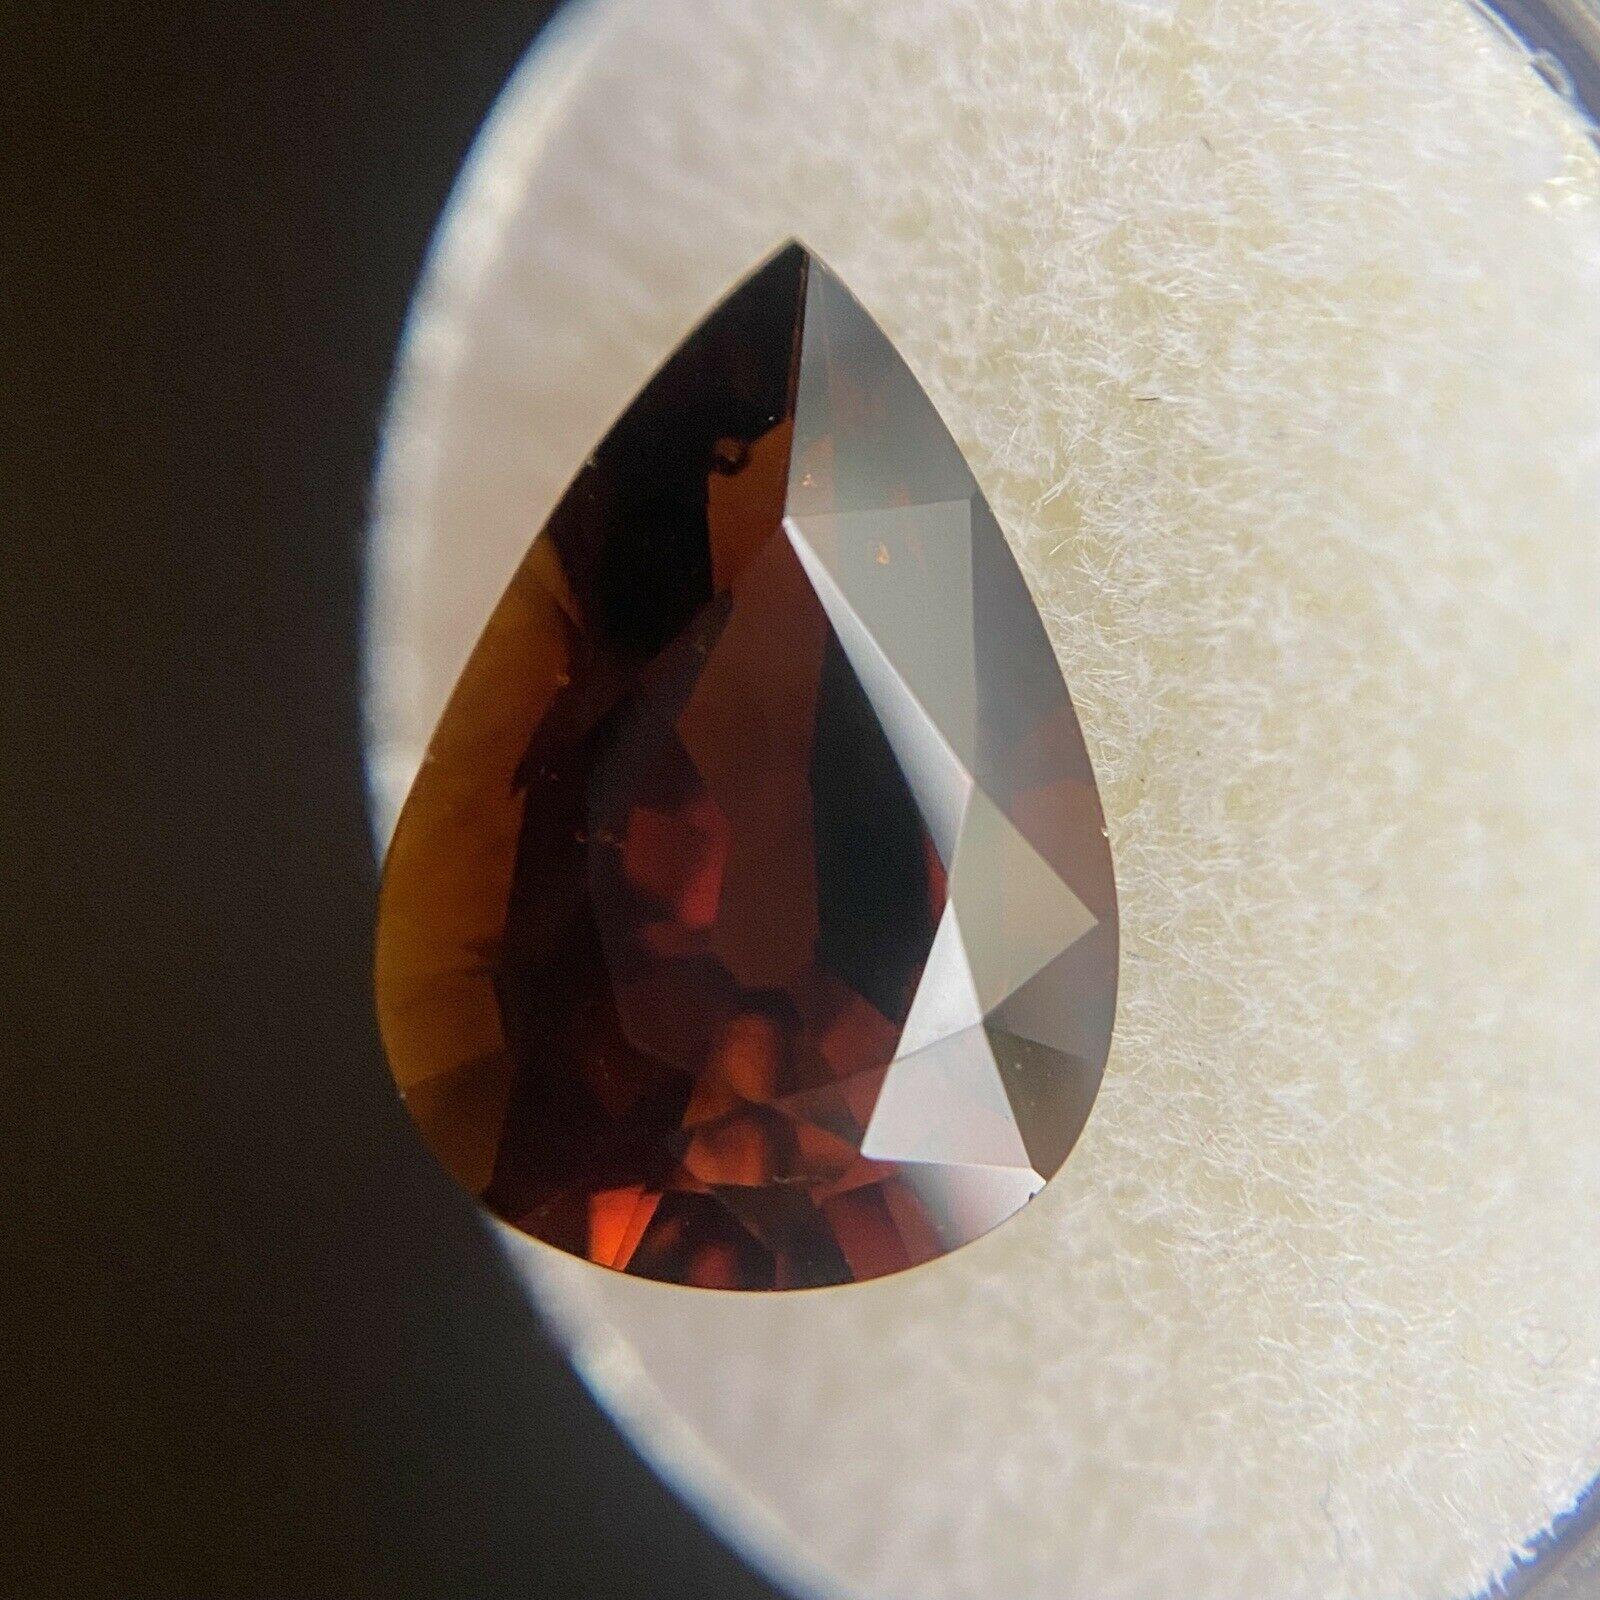 dark brown gemstone